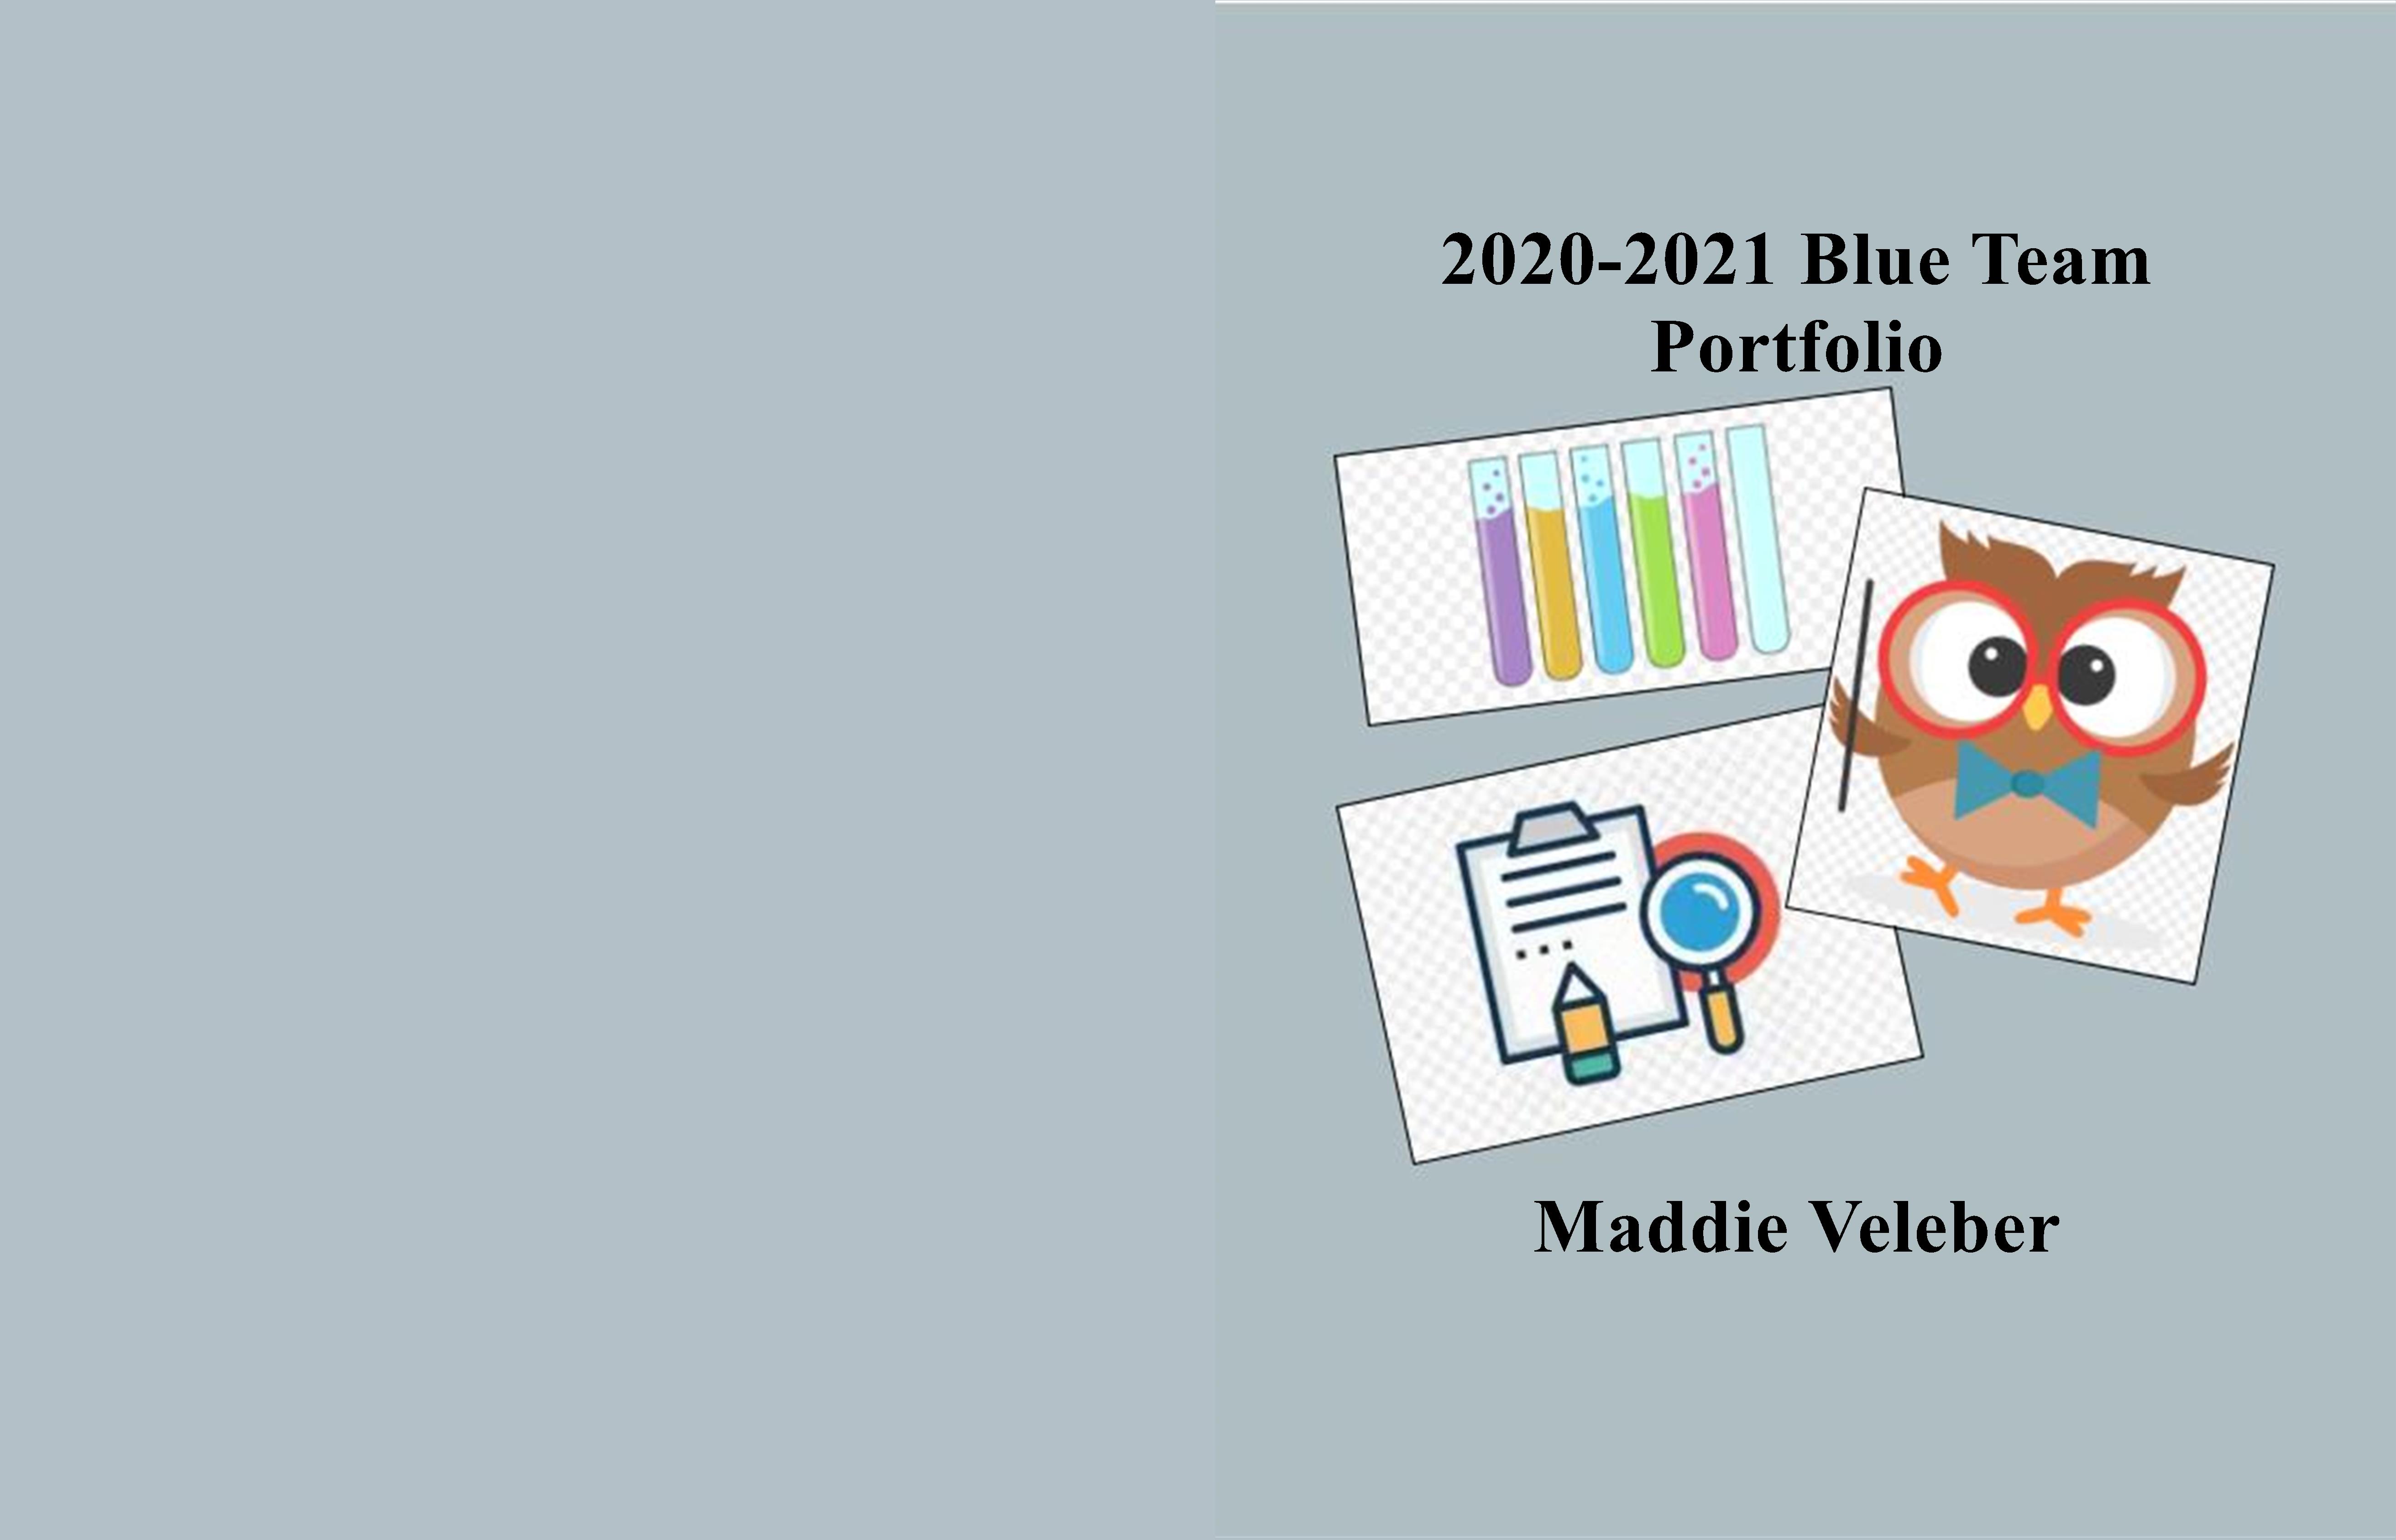 2020-2021 Blue Team Portfolio cover image